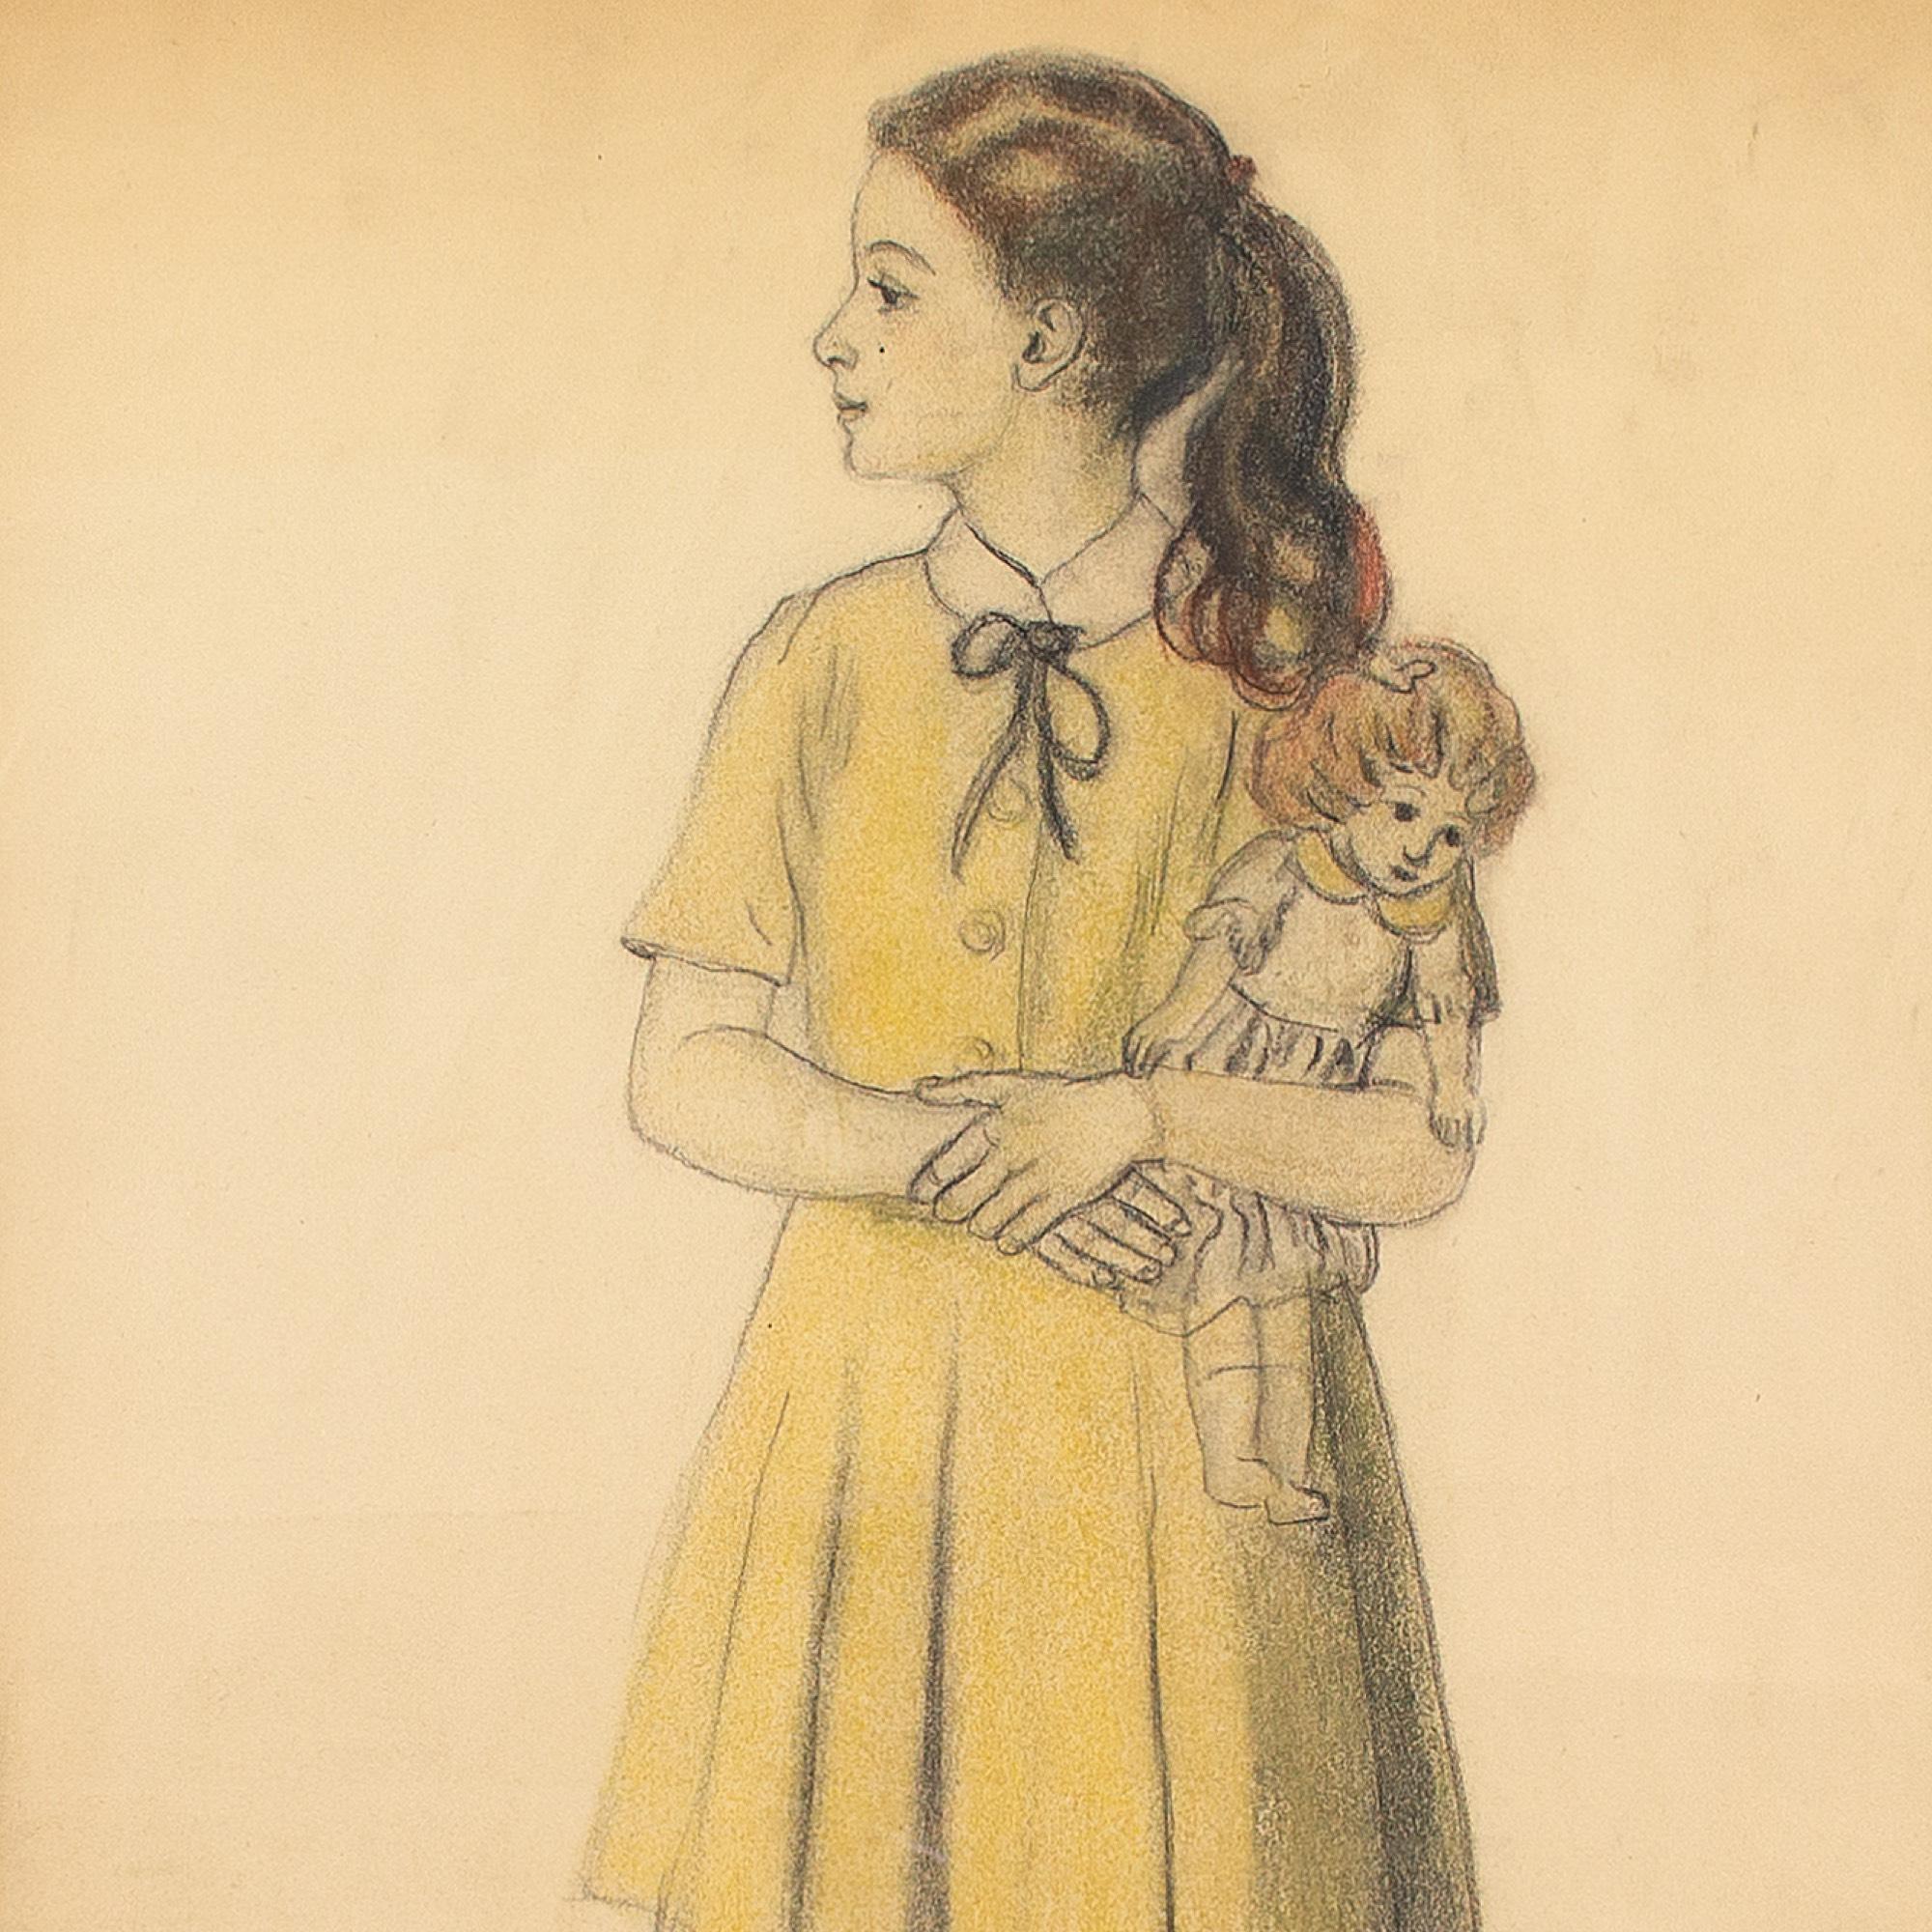 Ce charmant portrait du milieu du 20e siècle réalisé par l'artiste belge René Choprix (1888-1972) représente une fillette avec une poupée. C'est un portrait sensible et c'est probablement sa petite-fille.

Choprix est principalement connu pour ses